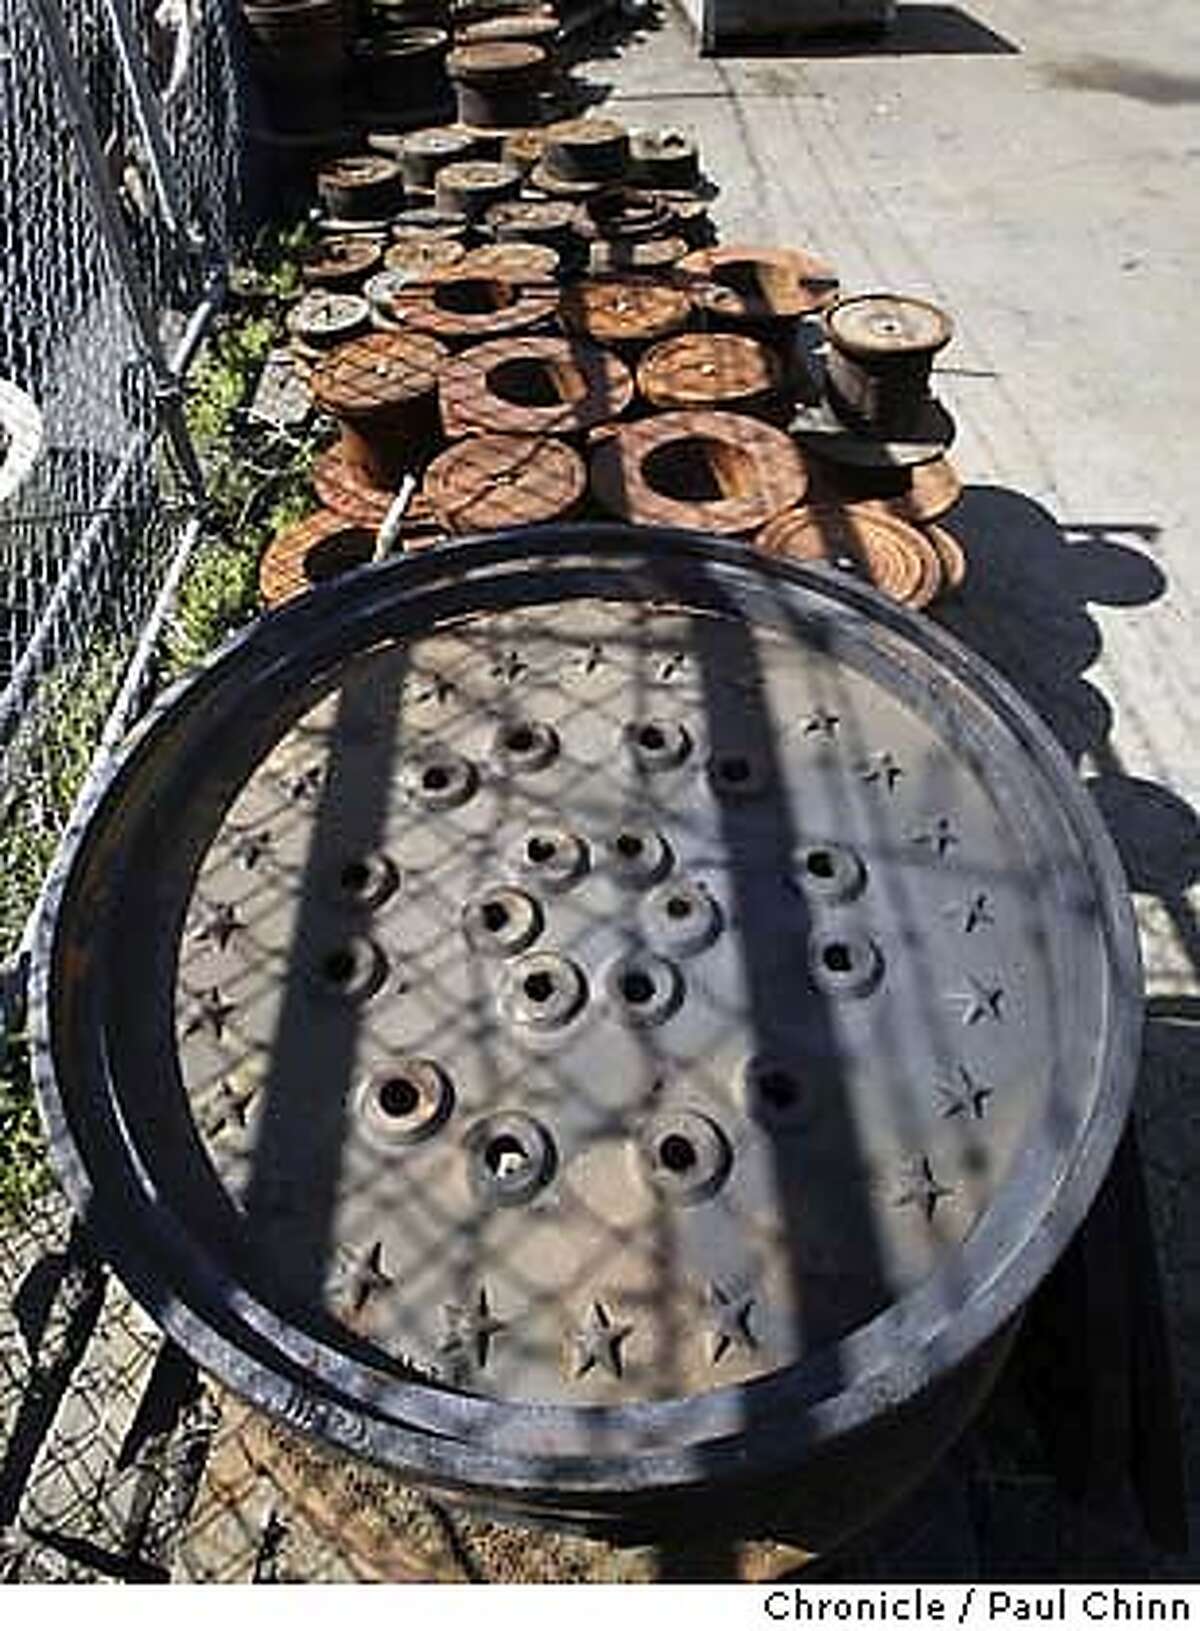 井盖是这家铸造厂的特产之一，不过奥克兰市购买外国制造的井盖让韦尔登·拉塞尔很恼火。威尔登·拉塞尔于2004年3月9日在奥克兰的凤凰铸造店。PAUL CHINN/The Chronicle